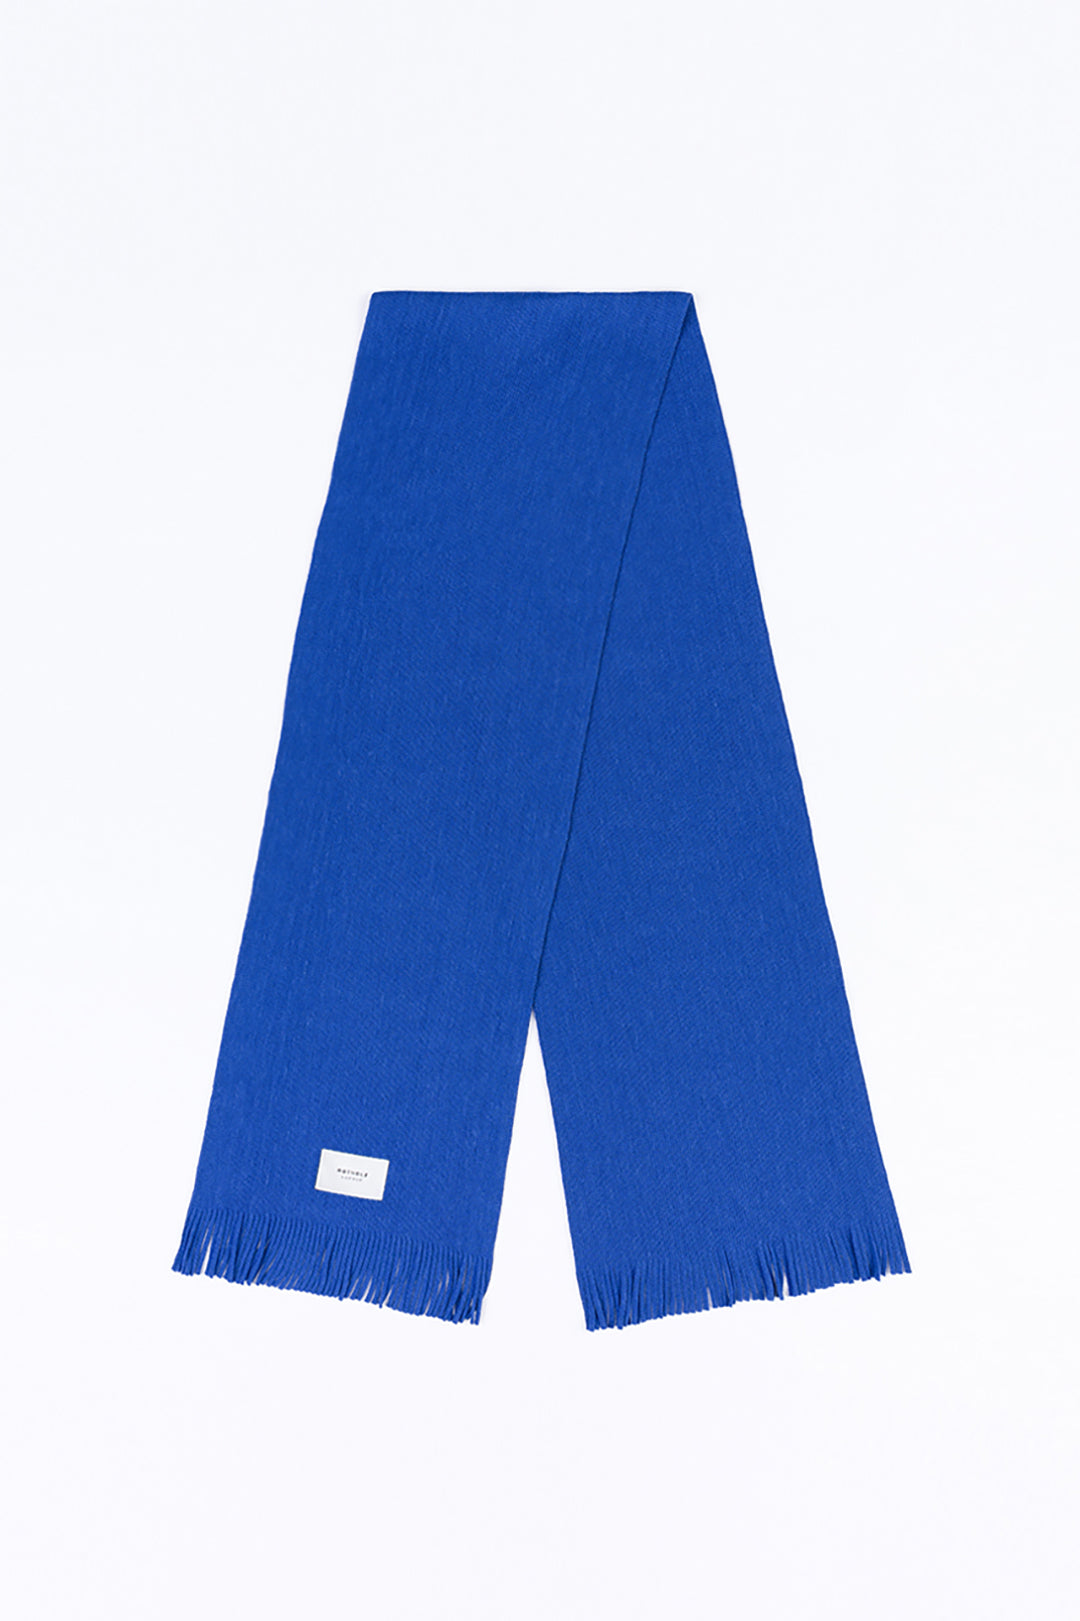 Écharpe en laine mérinos - bleu cobalt - Fabriquée en Allemagne